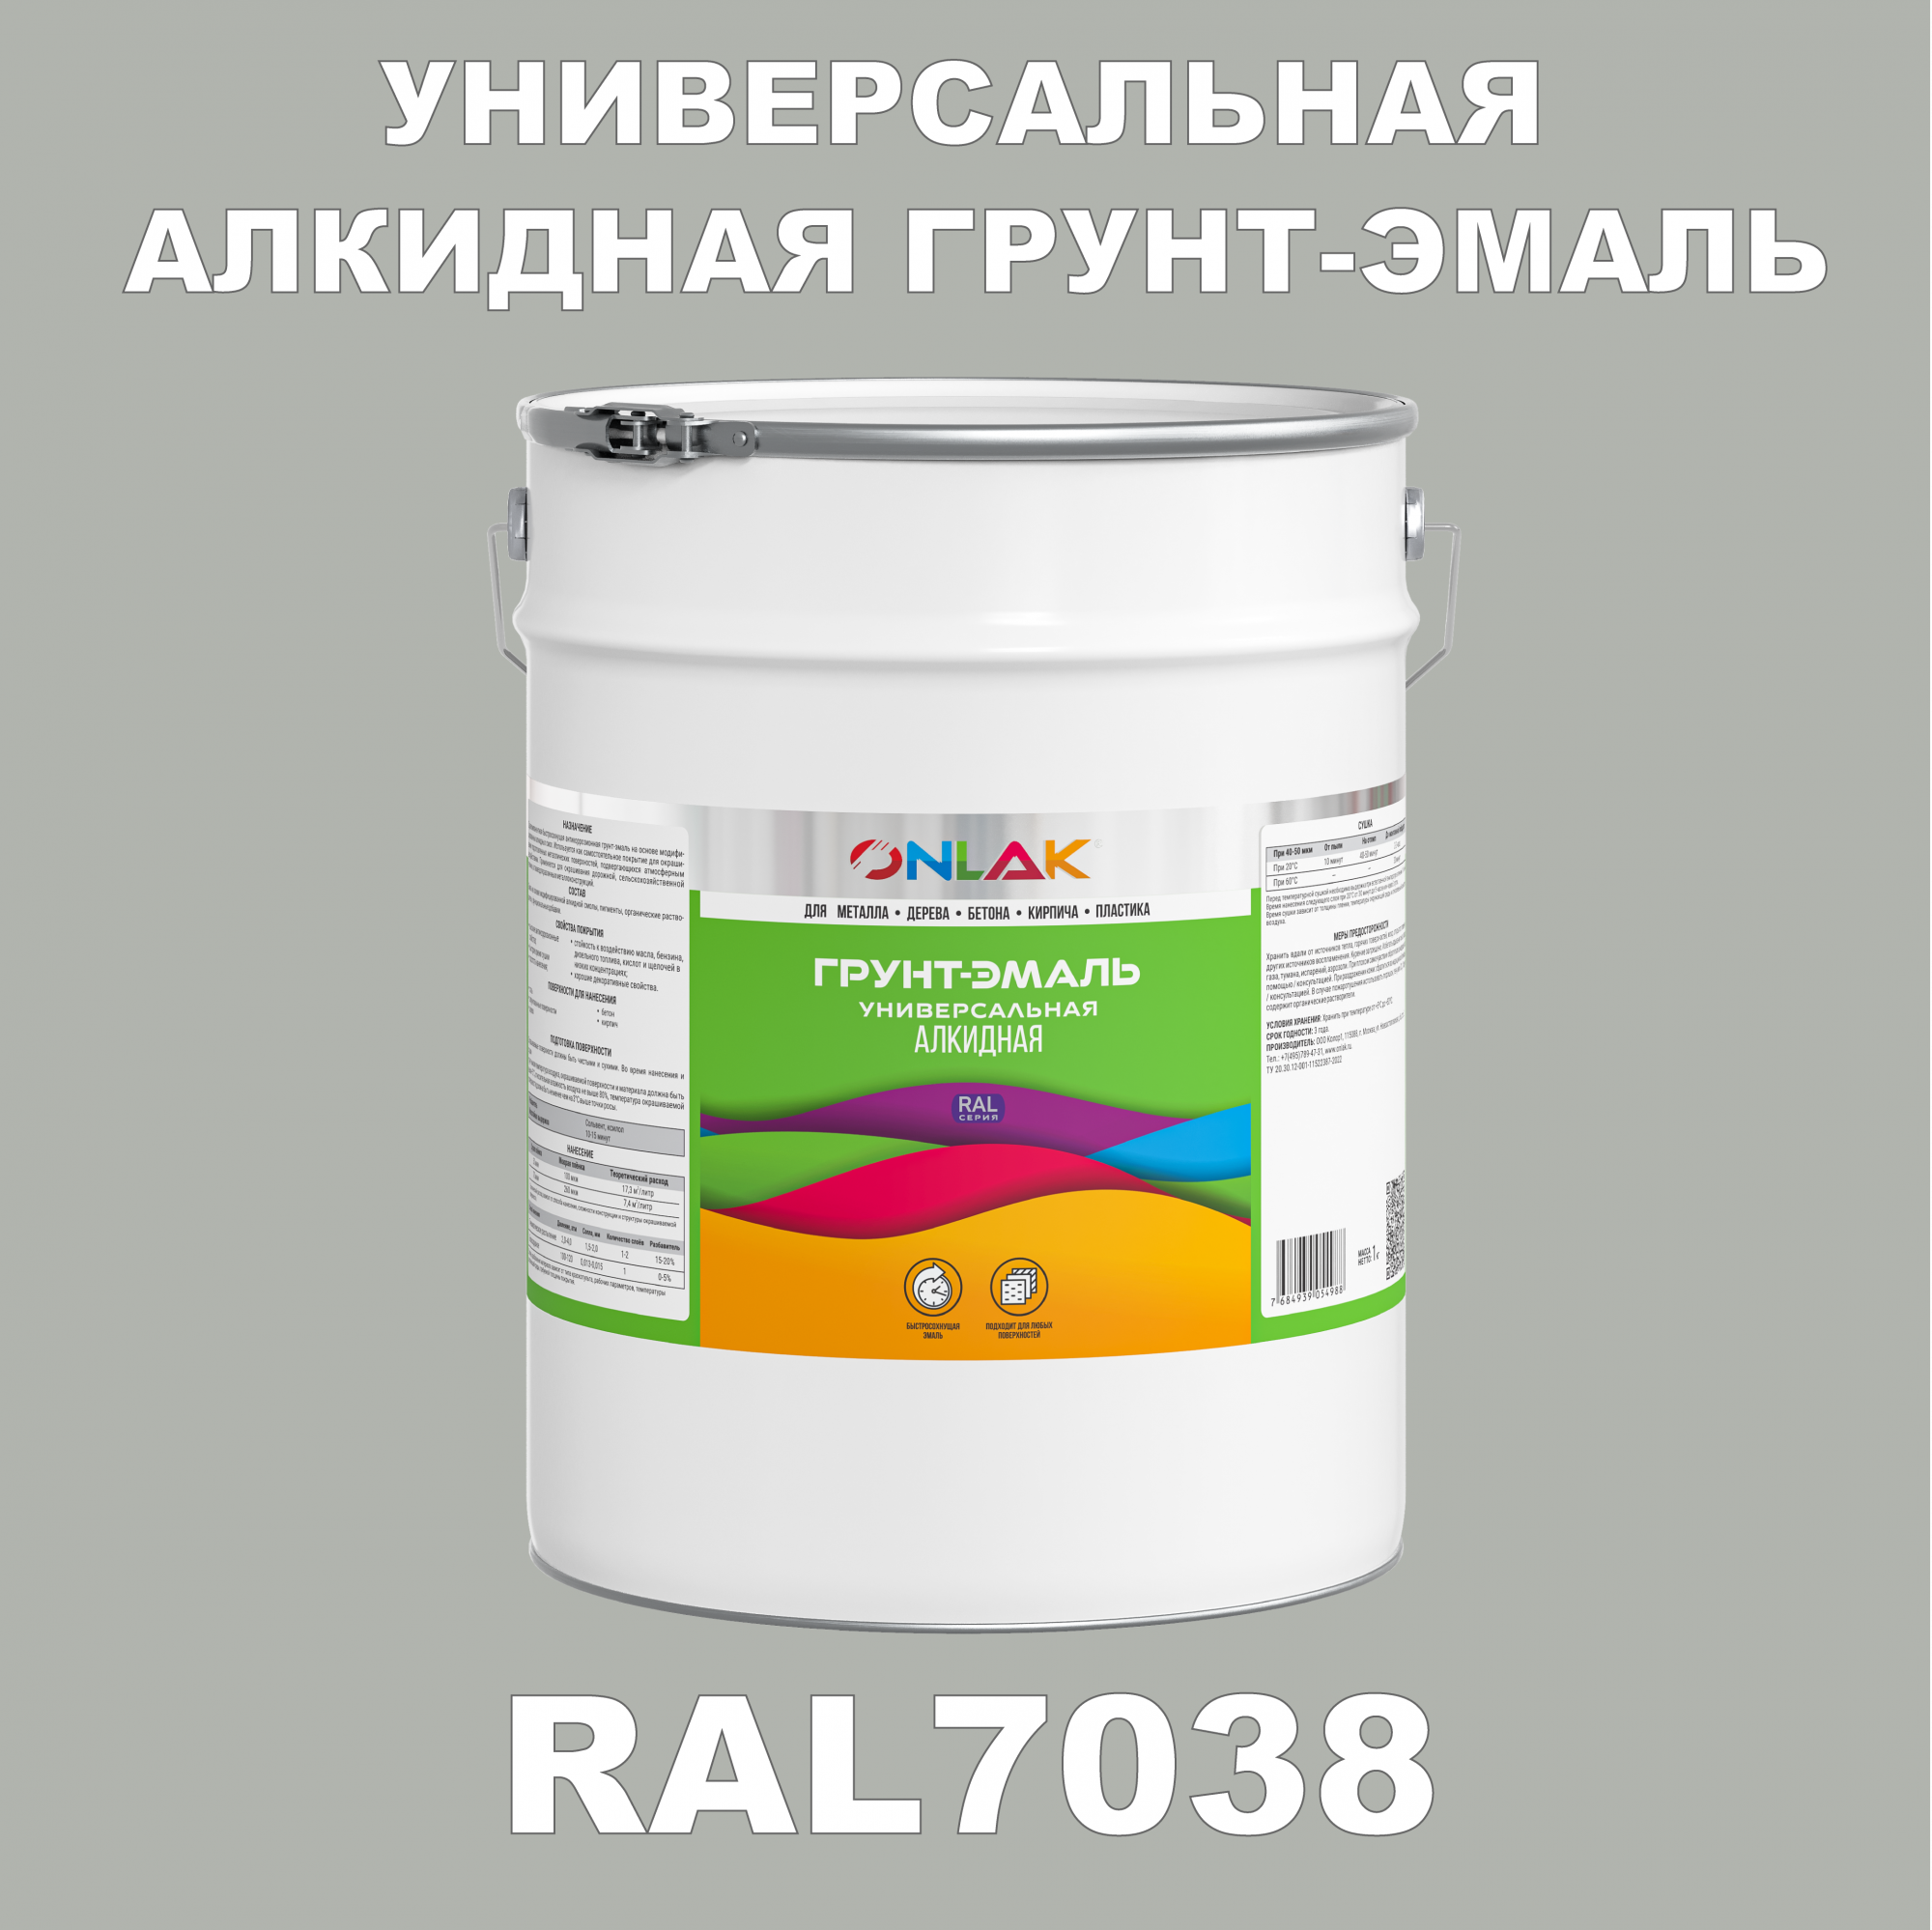 Грунт-эмаль ONLAK 1К RAL7038 антикоррозионная алкидная по металлу по ржавчине 20 кг грунт эмаль аэрозольная престиж 3в1 алкидная коричневая ral 8017 425 мл 0 425 кг